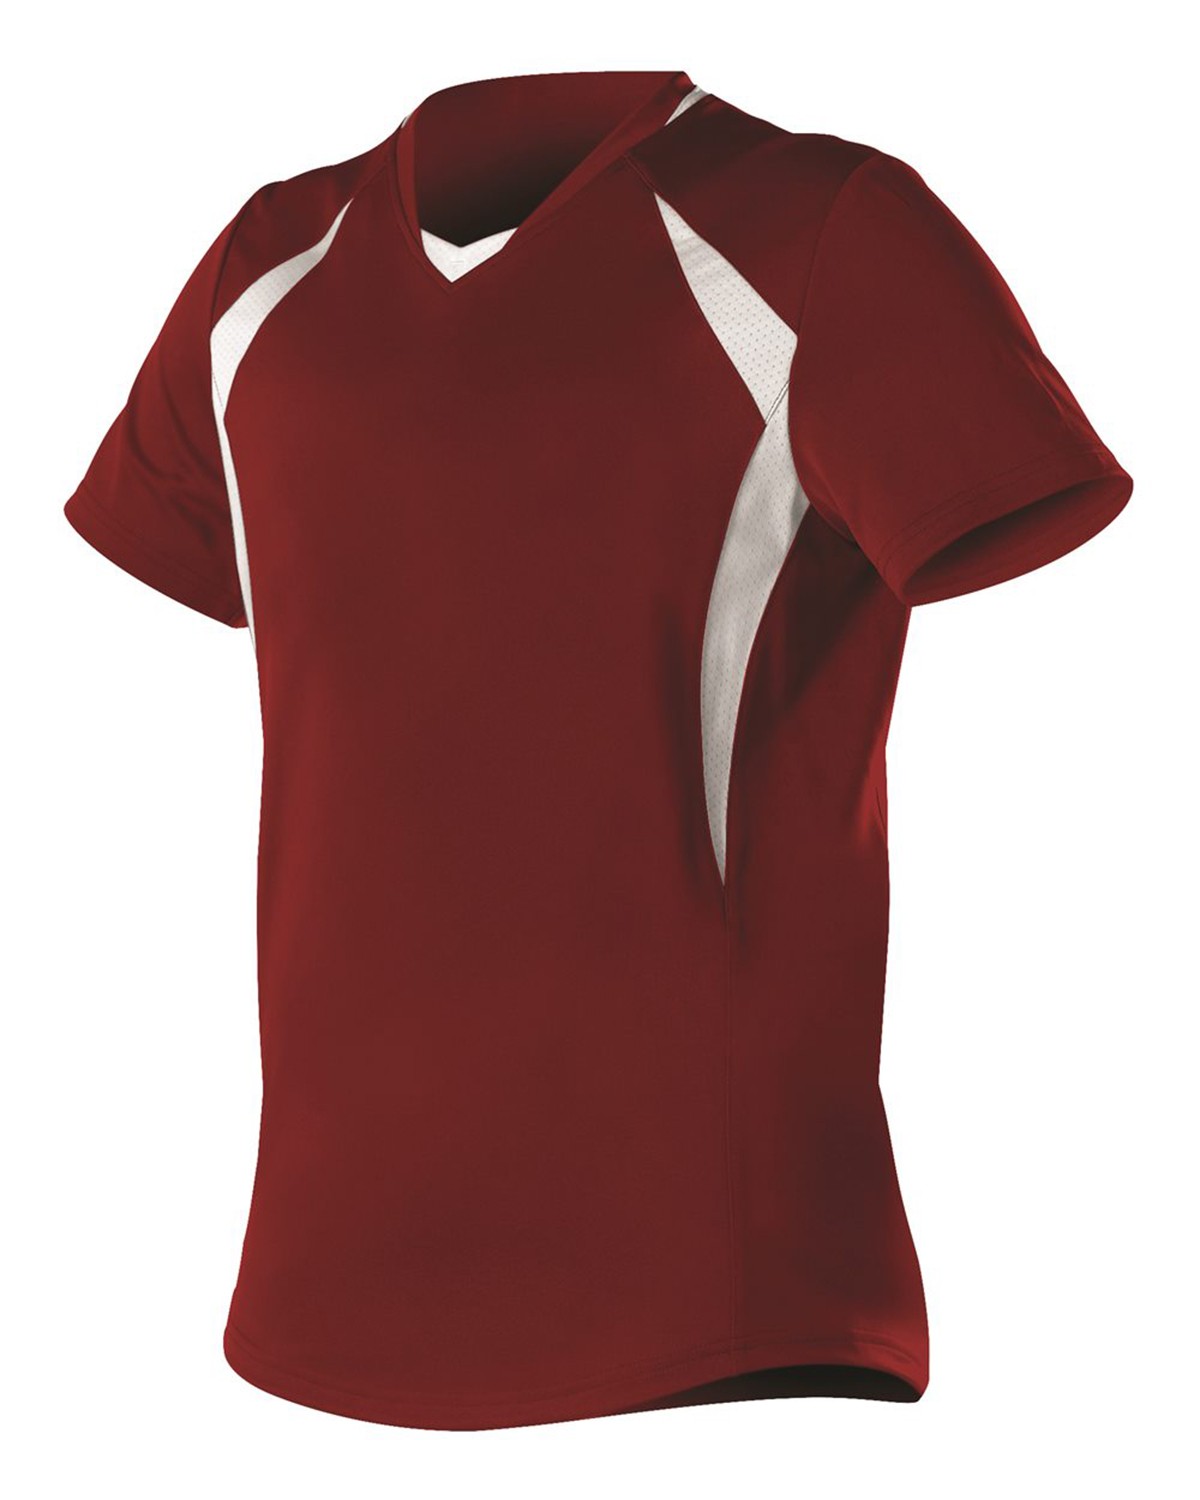 Women's Under Armour Henley Softball Button Jersey Red Women's Top Large Shirt 